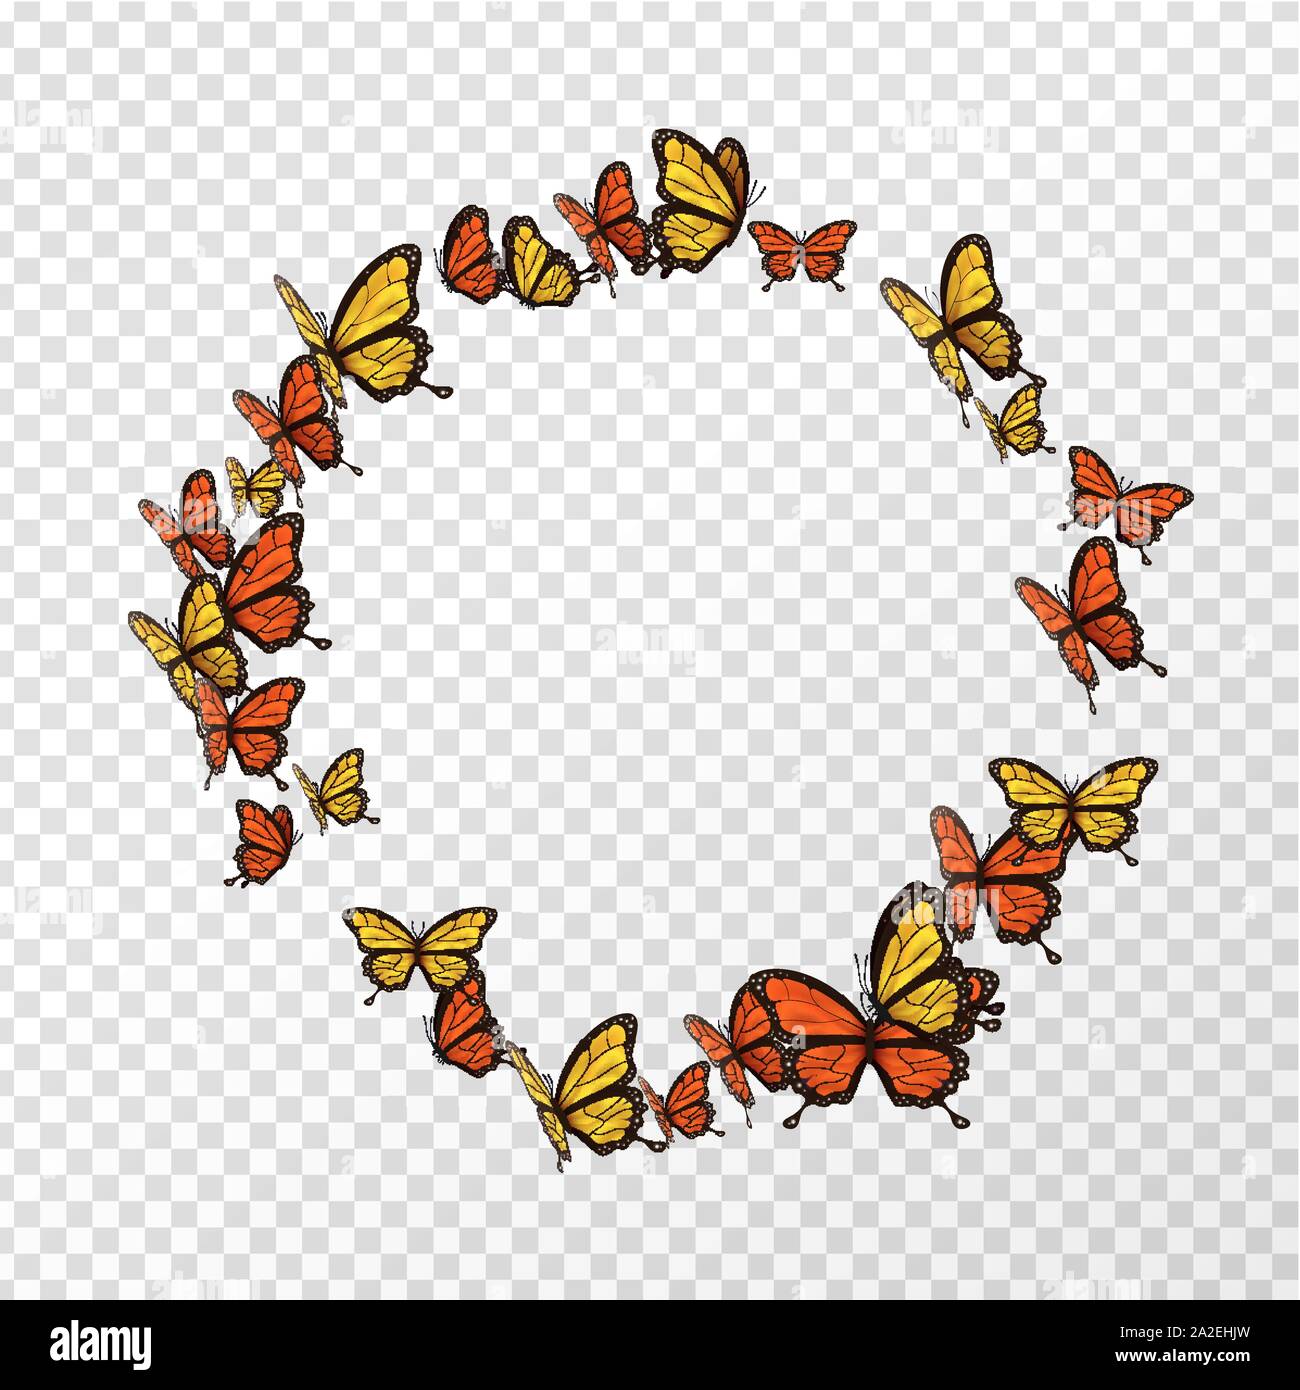 Orange und Gelb butterfly Kreis Frame auf transparentem Hintergrund mit kopieren. Isolierte runde Schmetterlinge fliegen. Stock Vektor